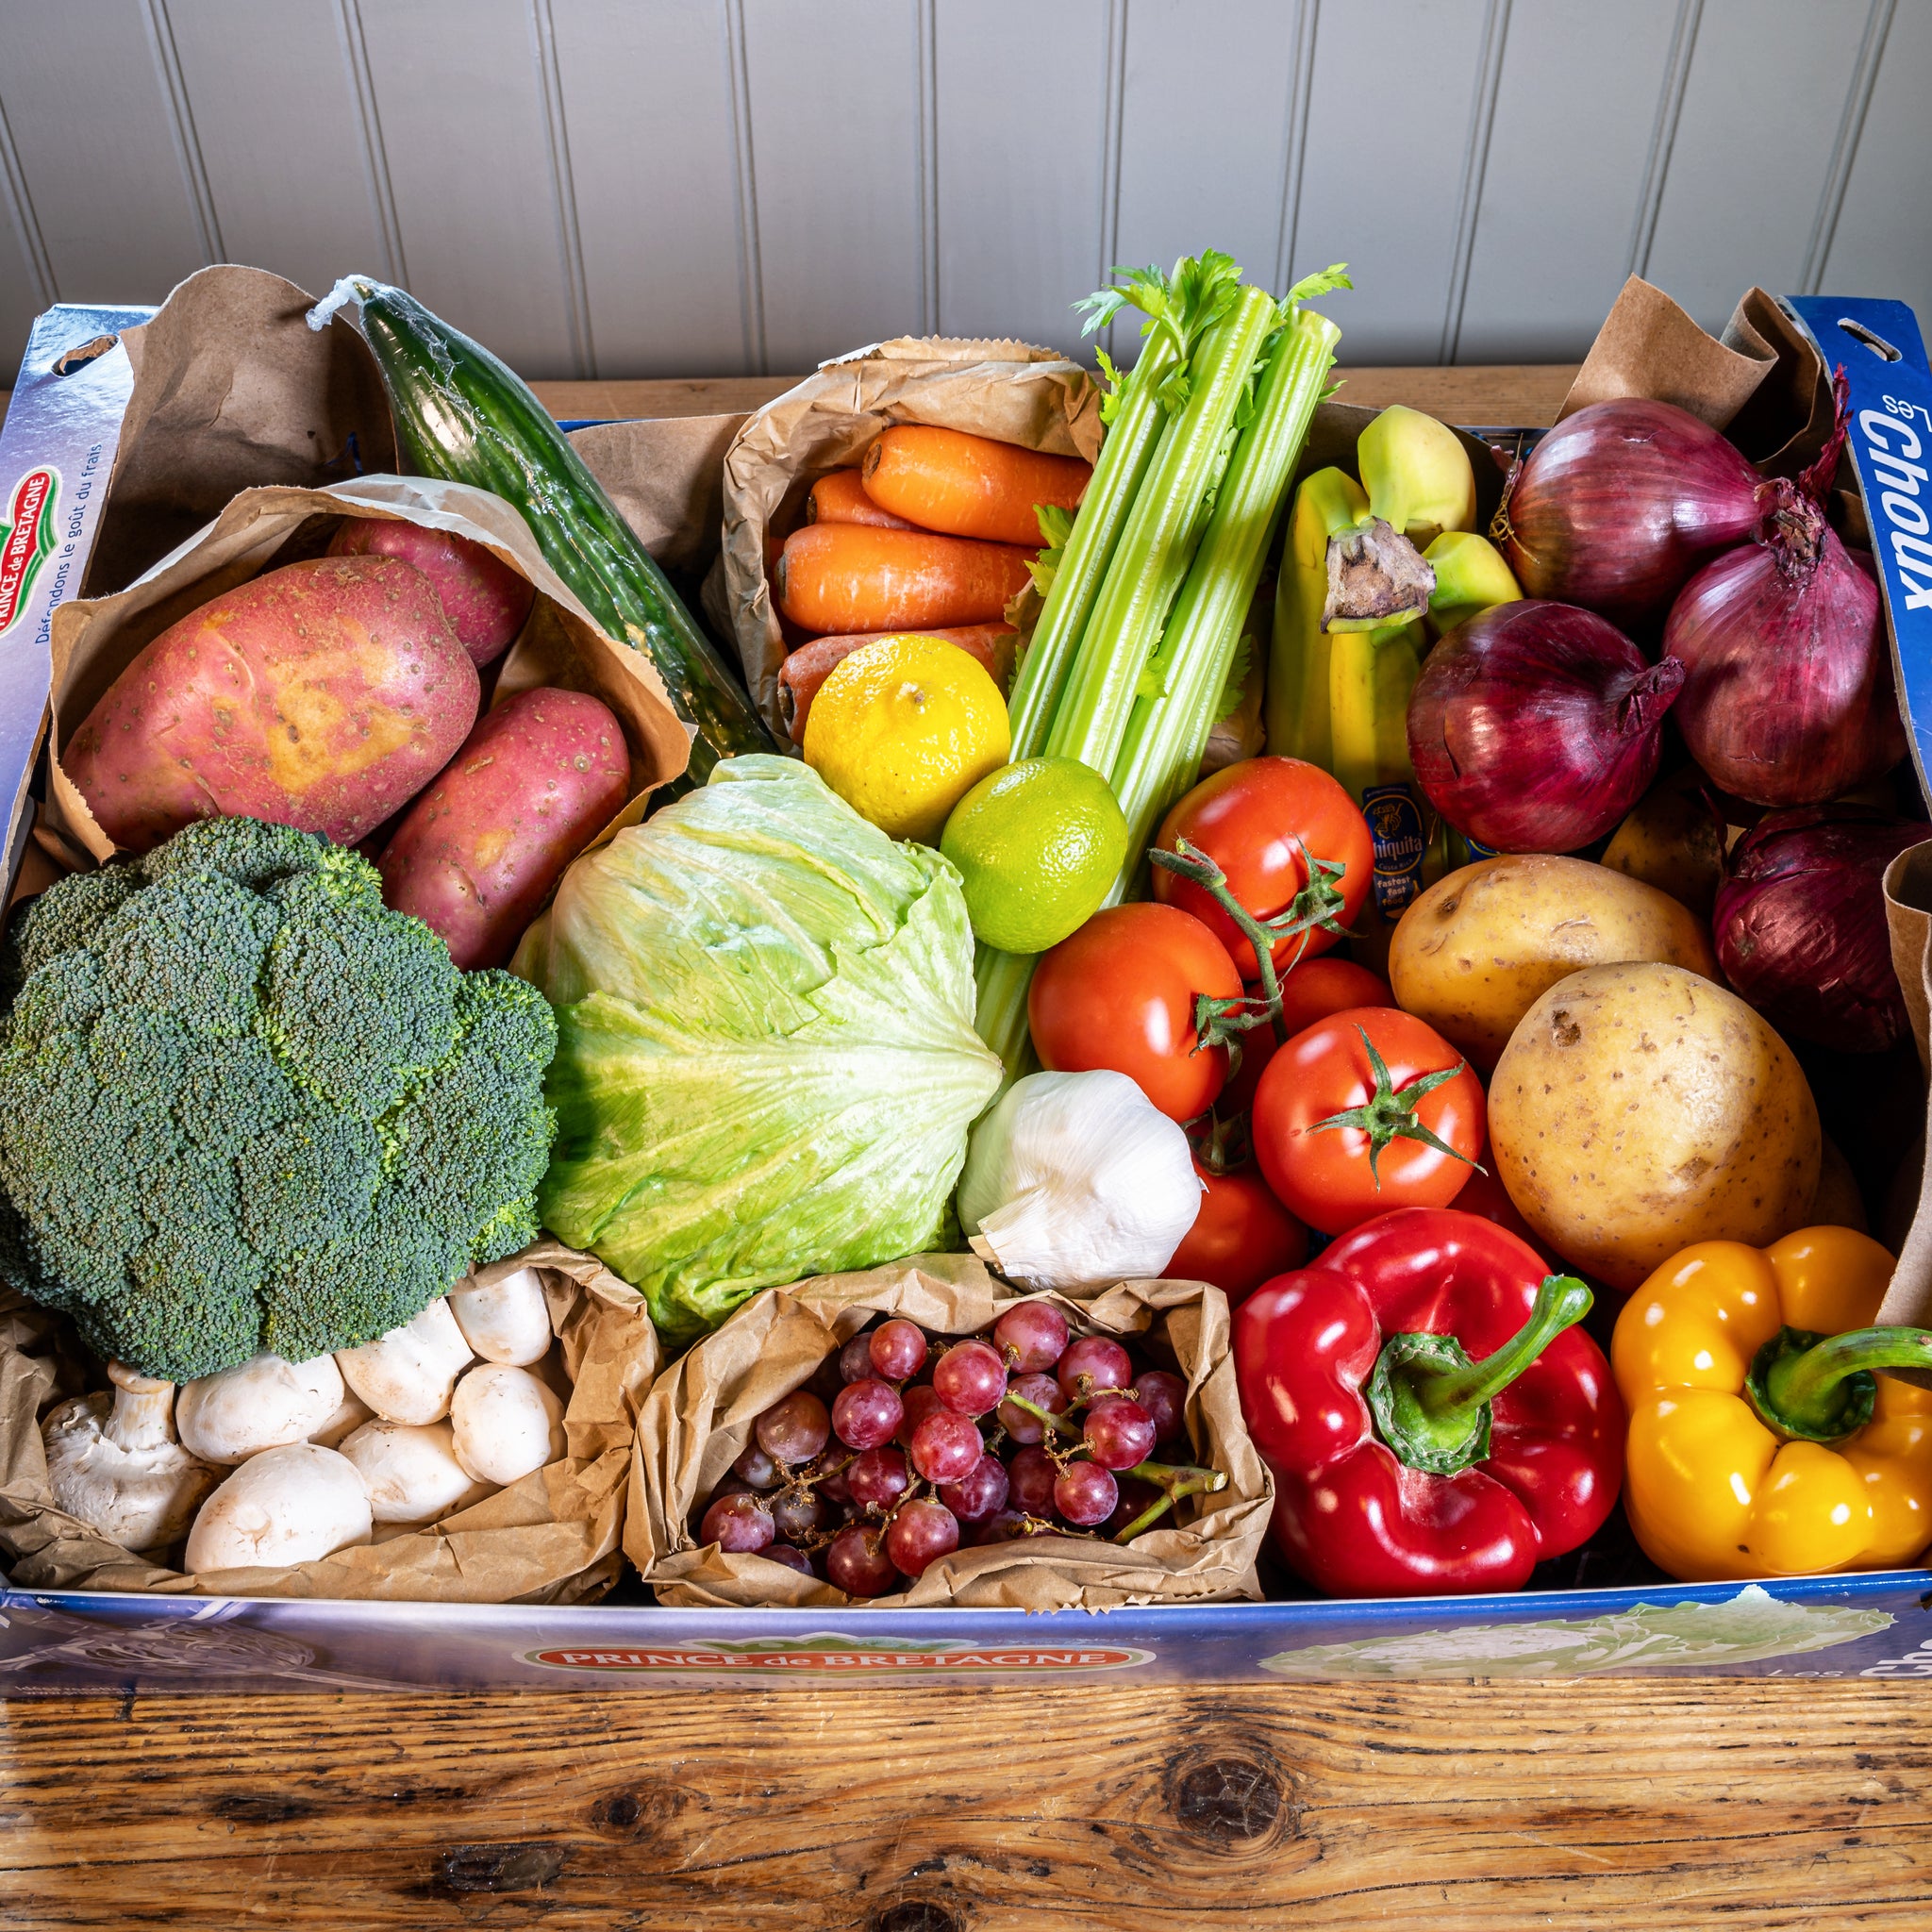 21 Item Fruit & Vege Box - Langthorpe Farm Shop